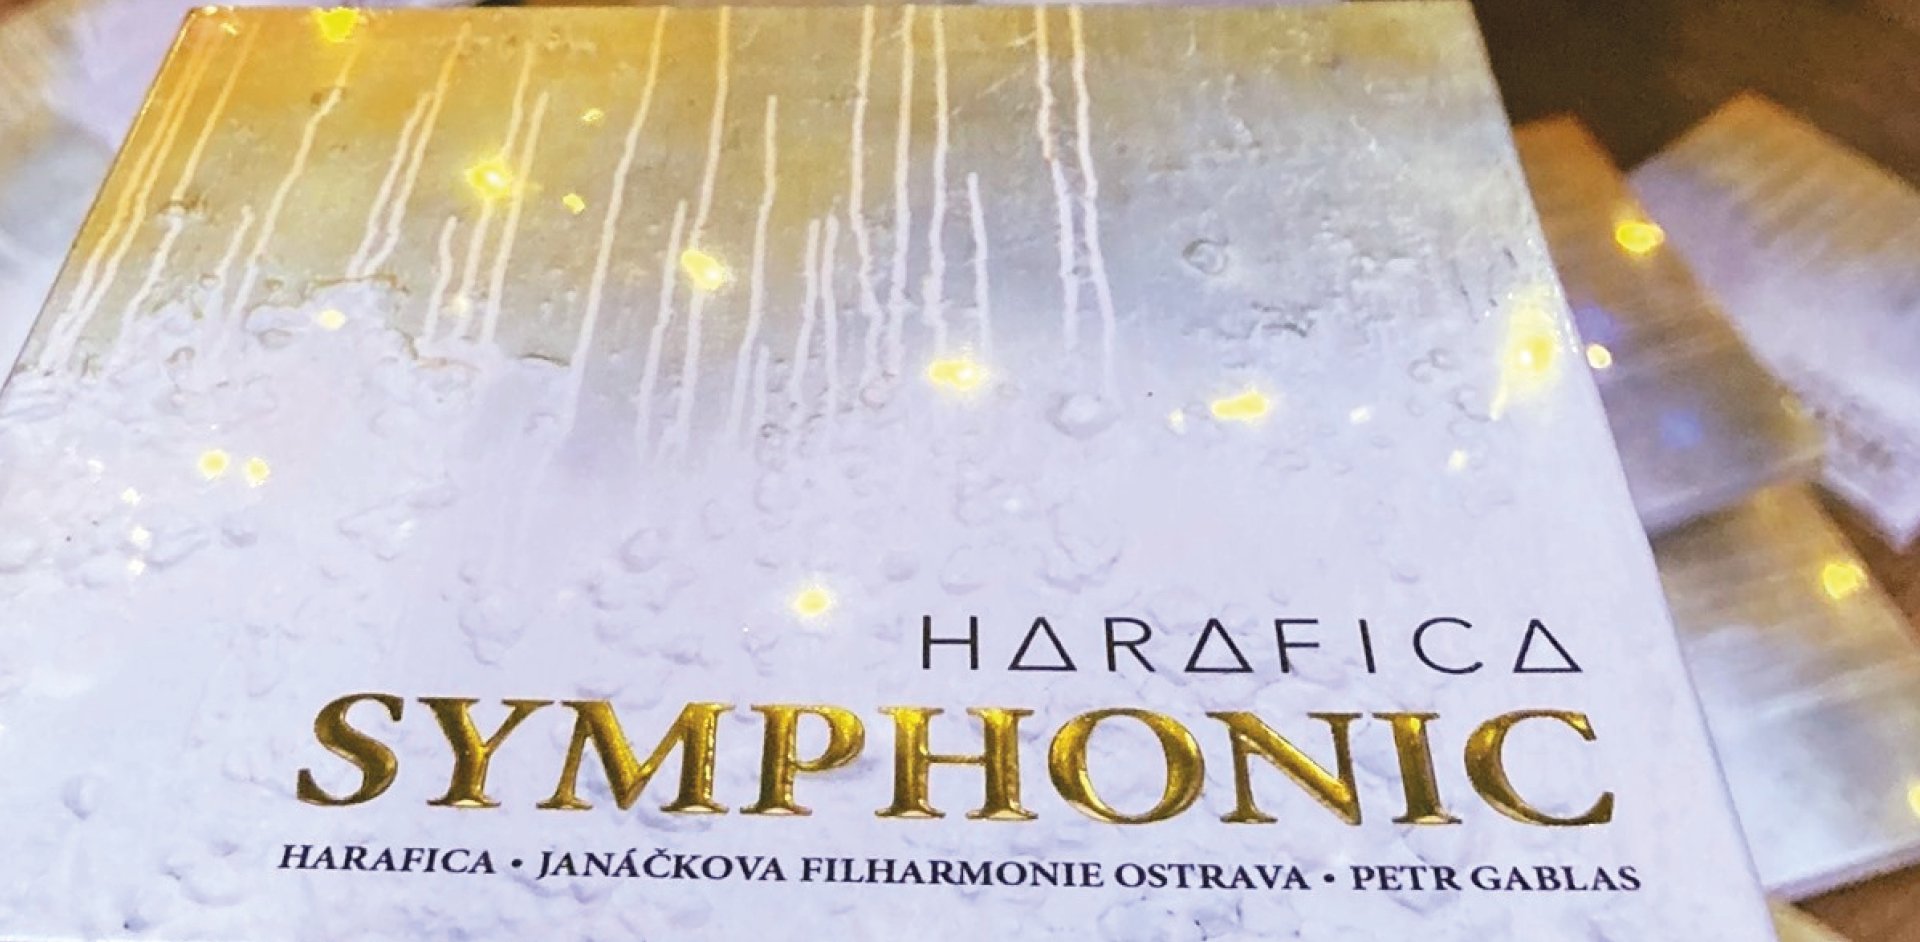 Podporujeme kulturu: Tip na vánoční dárek Harafica Symphonic!